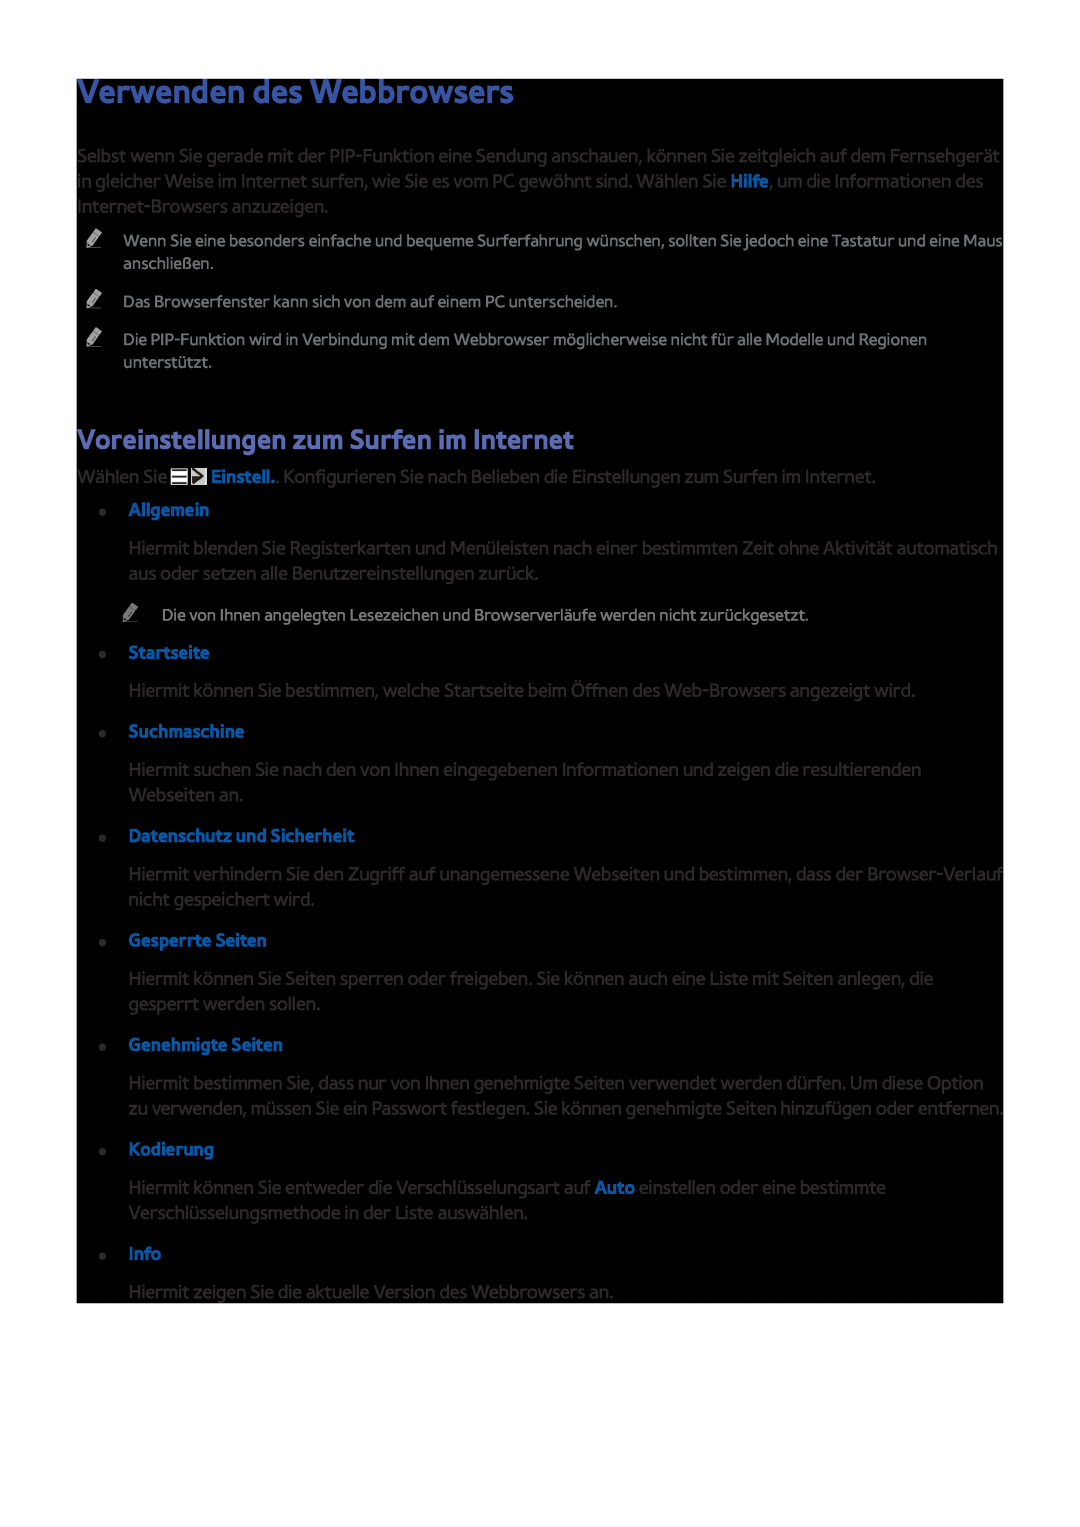 Samsung UE40JU7090TXZG Verwenden des Webbrowsers, Voreinstellungen zum Surfen im Internet, Allgemein, Startseite, Info 